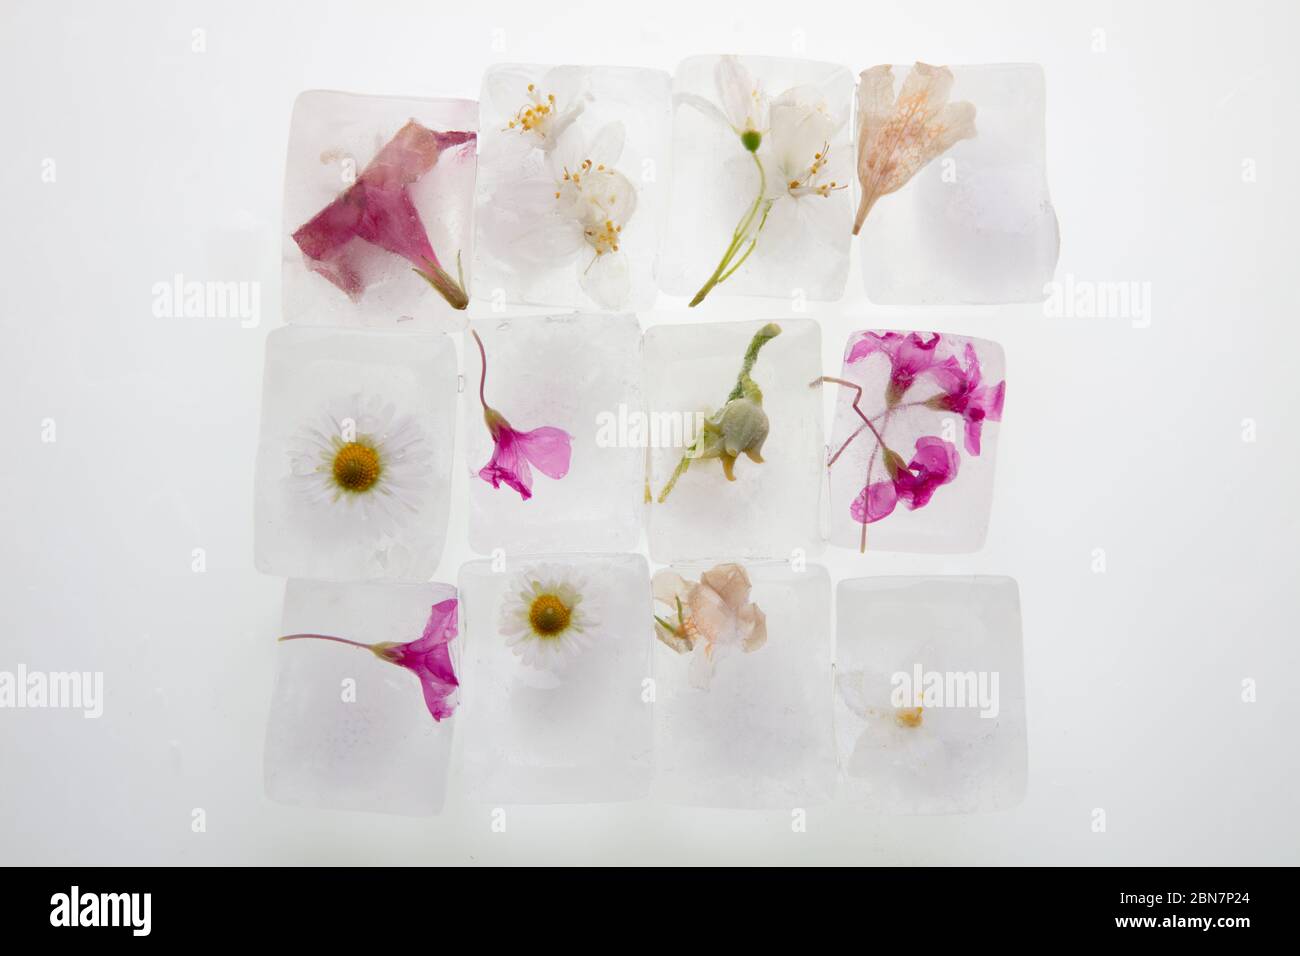 Ein schönes Foto von wilden Frühlingsblumen in transparenten Eiswürfeln von Wasser eingefroren, Studio Makro-Aufnahme, Draufsicht, flach legen Stockfoto